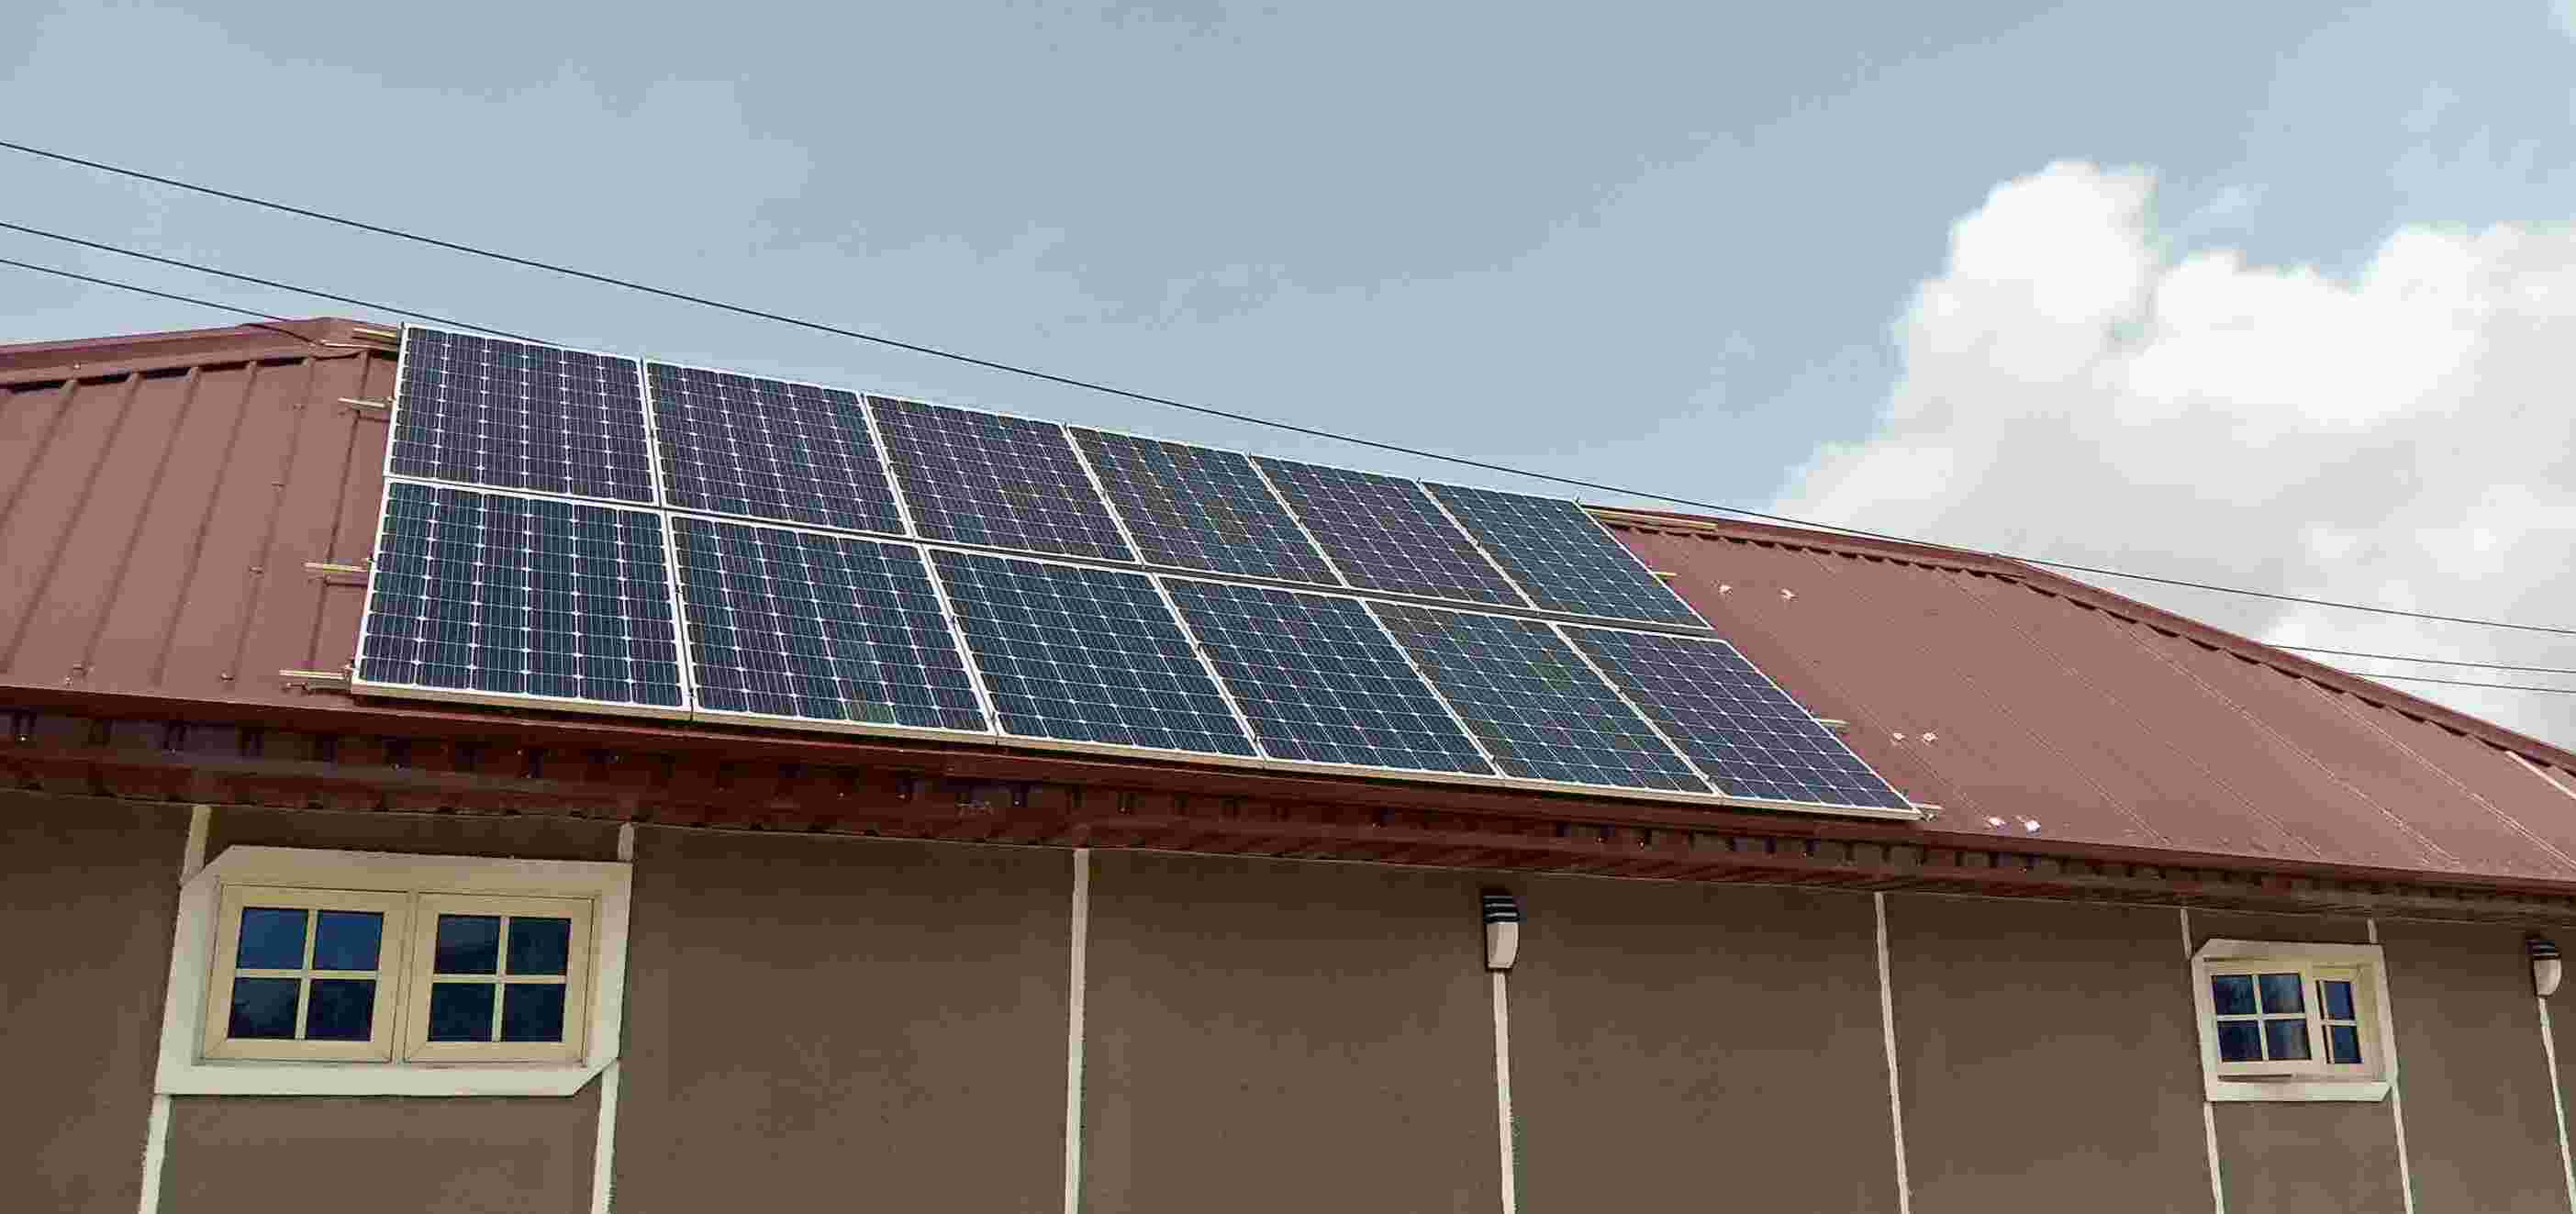 Installation of solar panel array